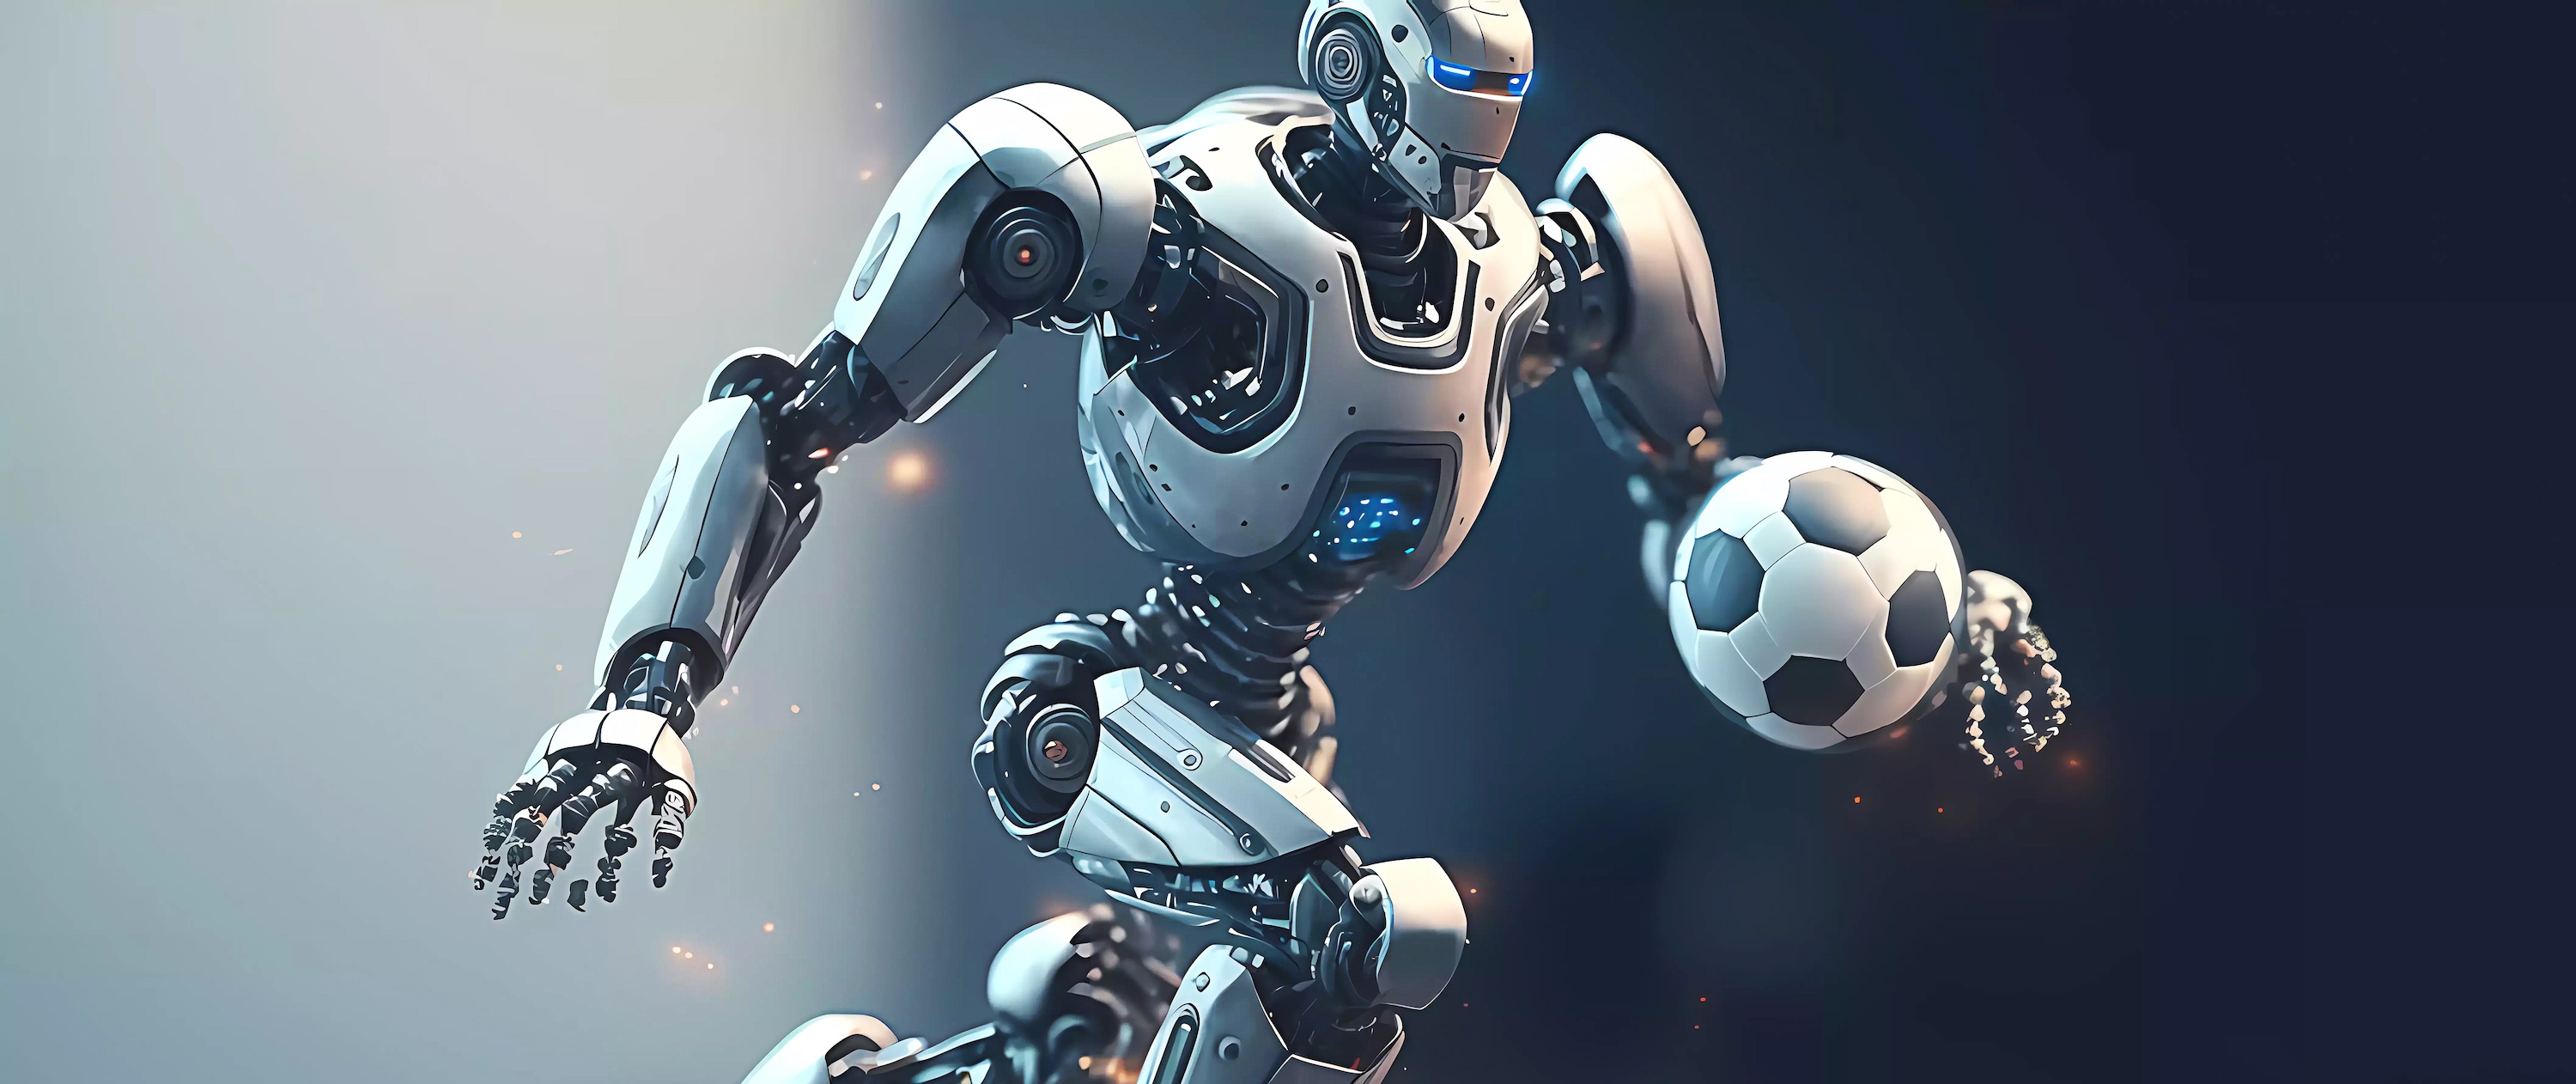 De petits robots ont appris à jouer au foot grâce à l’apprentissage par renforcement profond. © Infinity, Adobe Stock